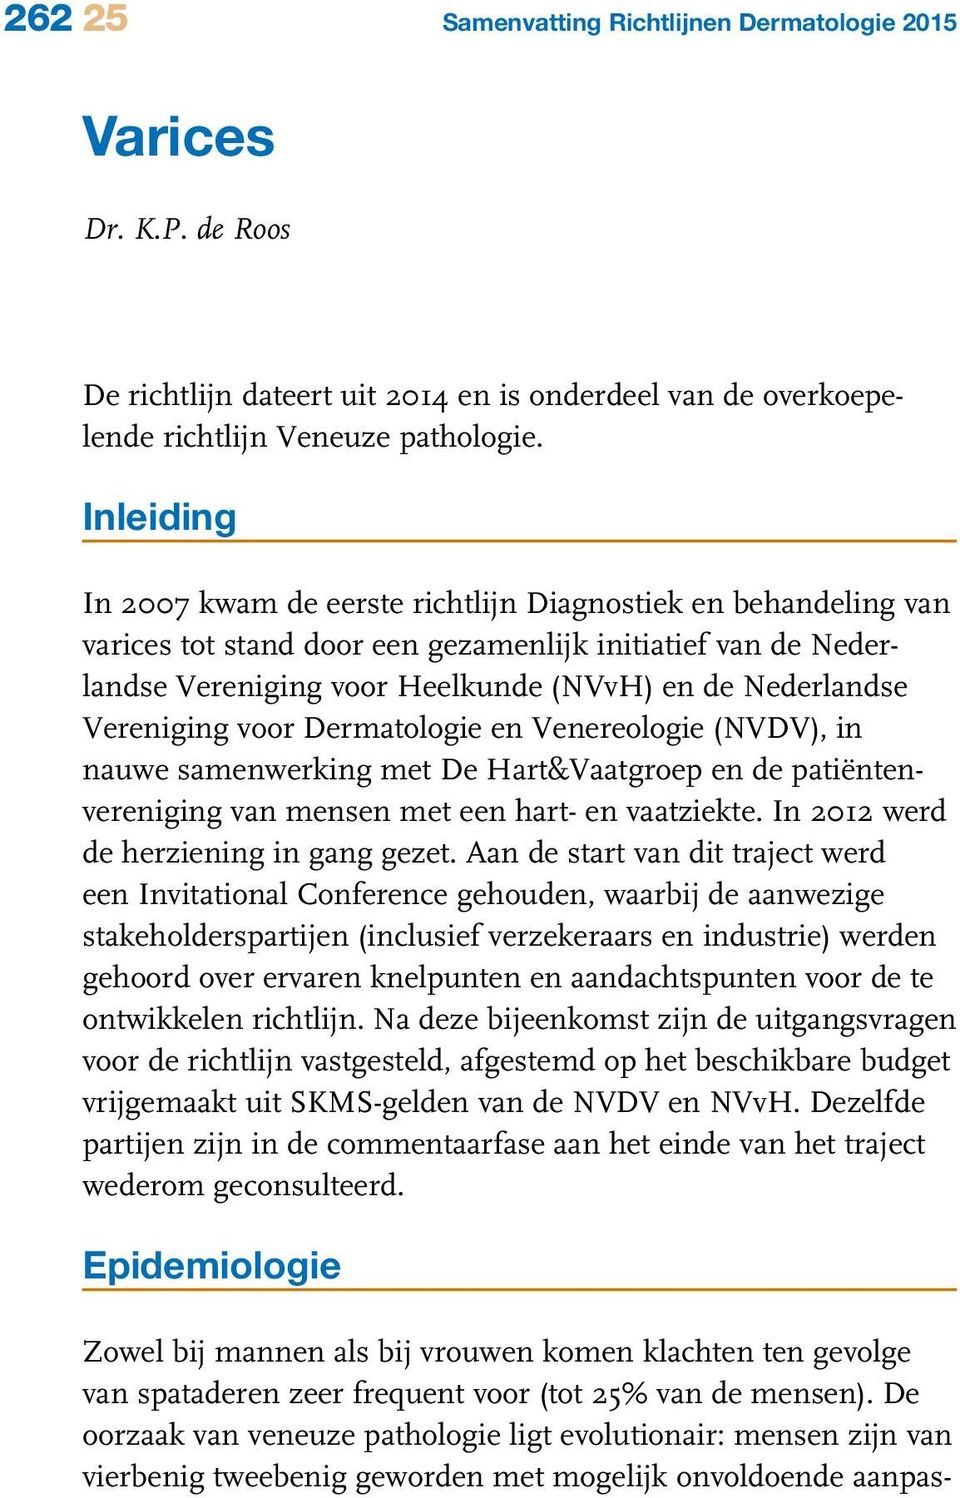 Vereniging voor Dermatologie en Venereologie (NVDV), in nauwe samenwerking met De Hart&Vaatgroep en de patiëntenvereniging van mensen met een hart- en vaatziekte.